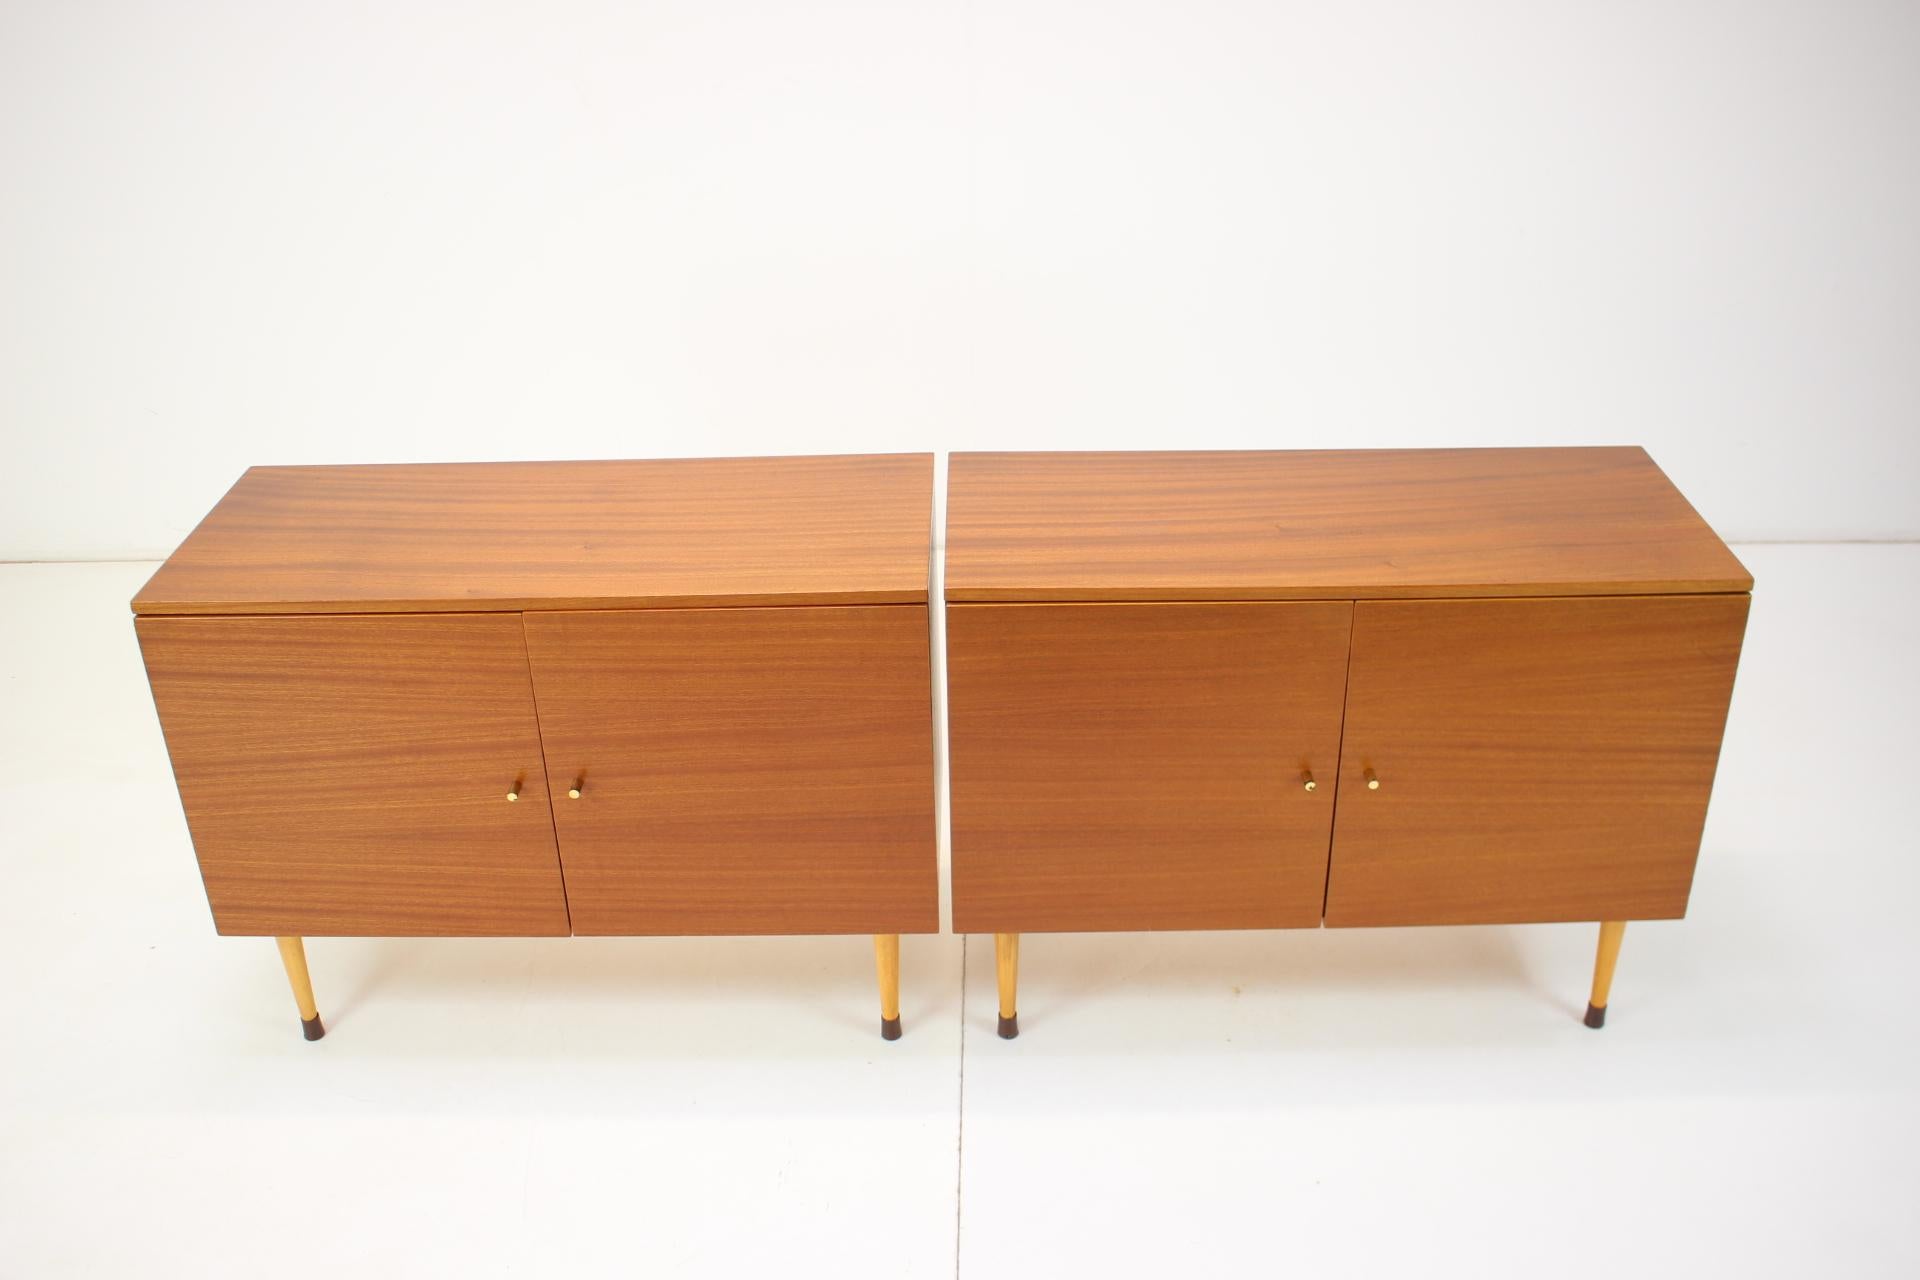 - Hergestellt in der Tschechoslowakei
- Hergestellt aus Holz, Furnier
- Guter, ursprünglicher Zustand
- Label: Möbel von erstklassiger Qualität.